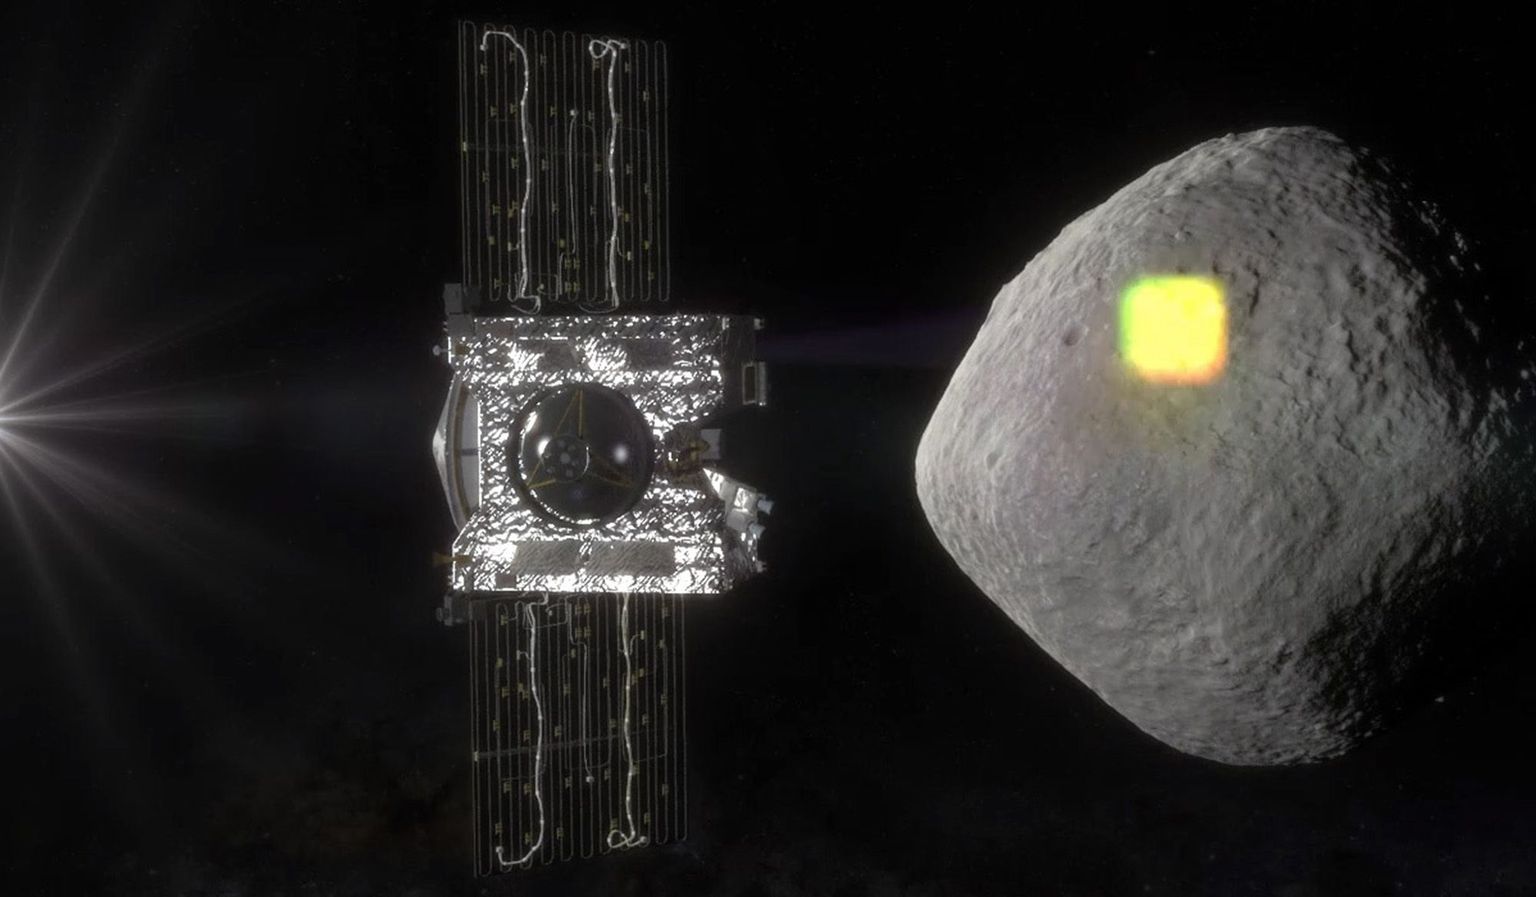 Kunstniku kujutis NASA OSIRIS-Rex kosmoselaevast, mis uurib Maa-lähedast asteroidi Bennu. Värskes uuringus käisid teadlased välja teooria, et kosmoselendudel vajalikku kaitset kosmilise kiirguse eest võivad pakkuda just asteroididelt kaevandatavad materjalid.